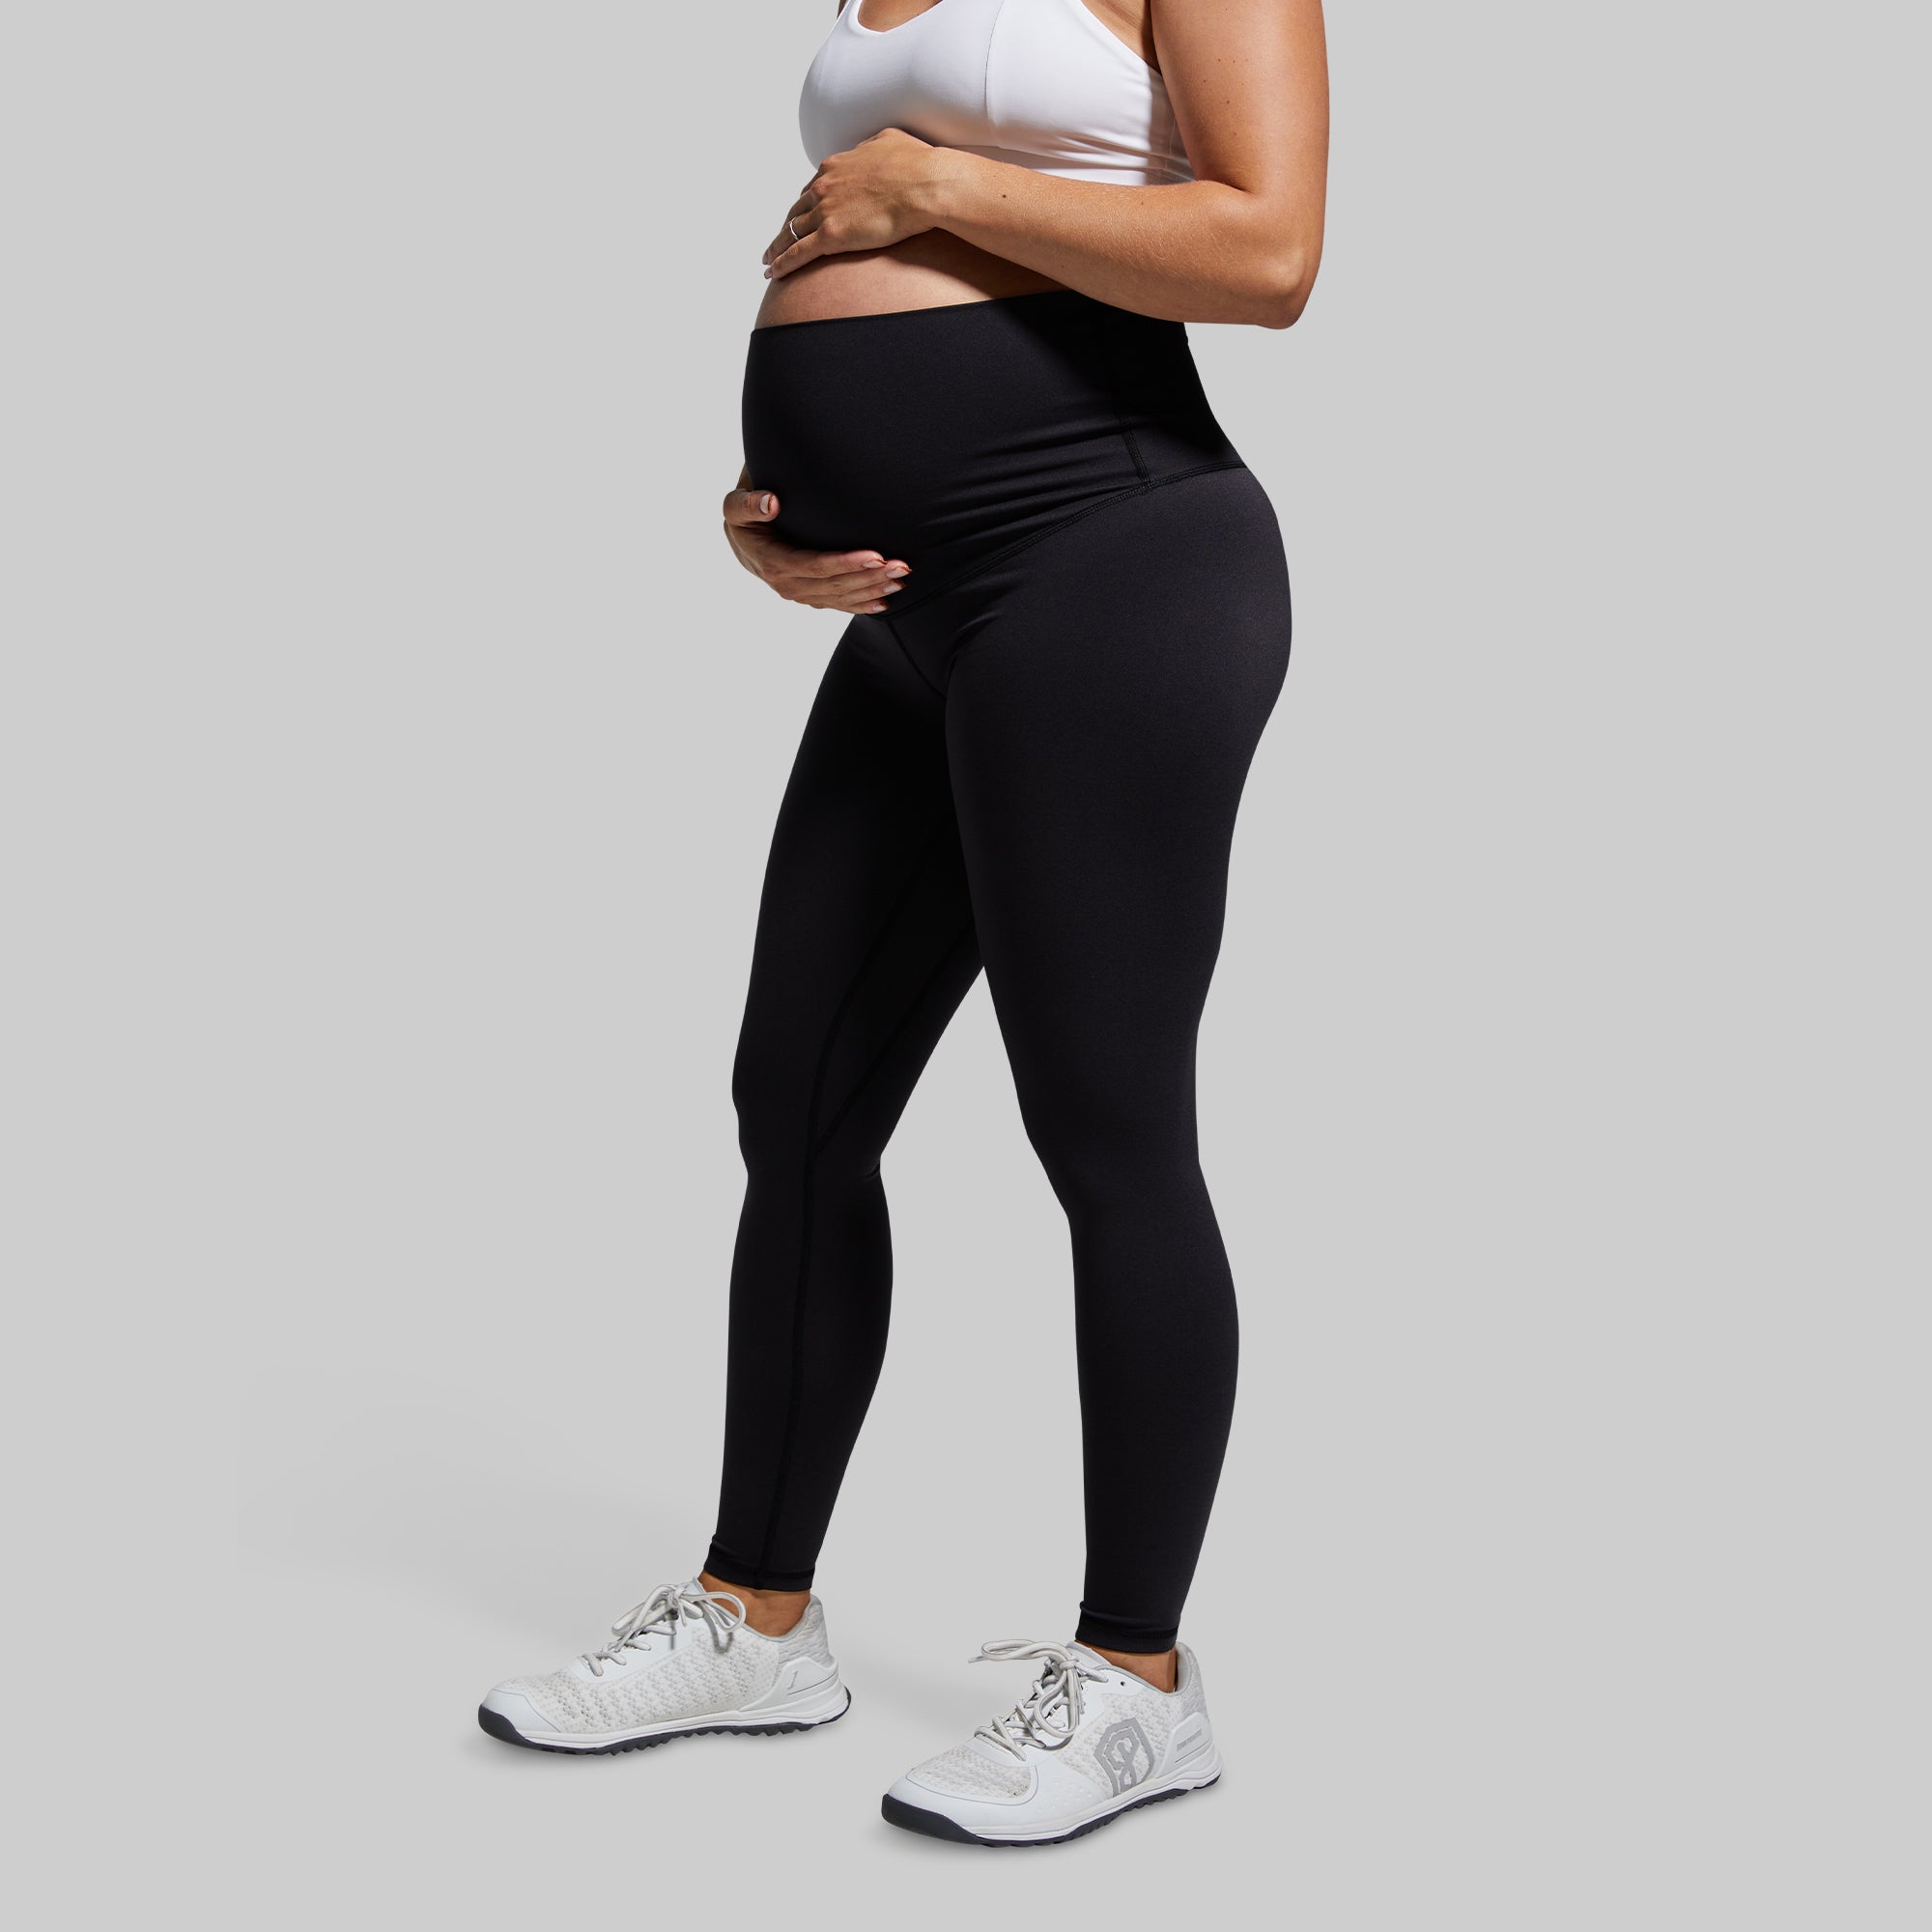 Black Pregnancy Workout Leggings